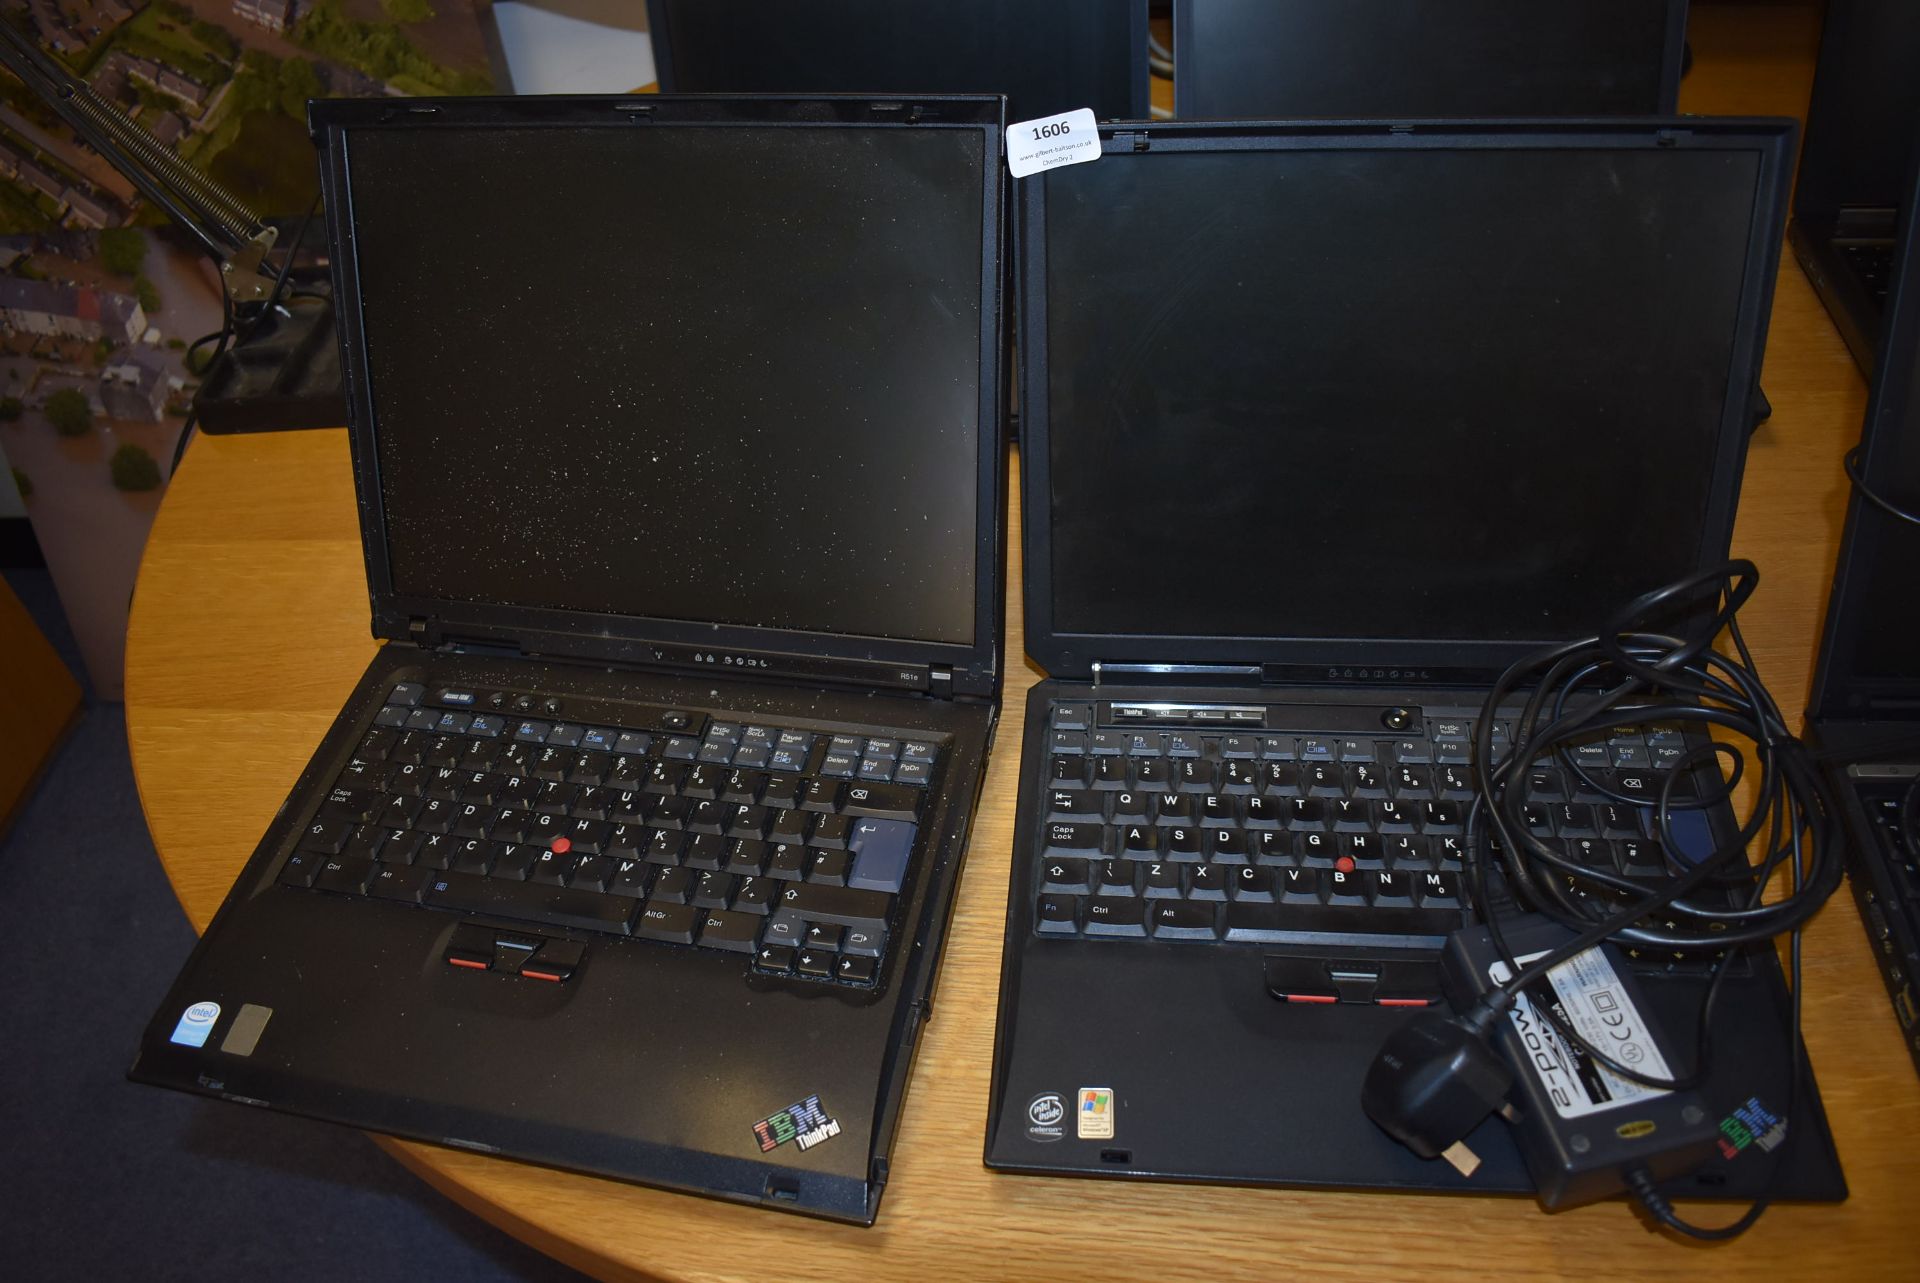 *Two IBM ThinkPad Laptops